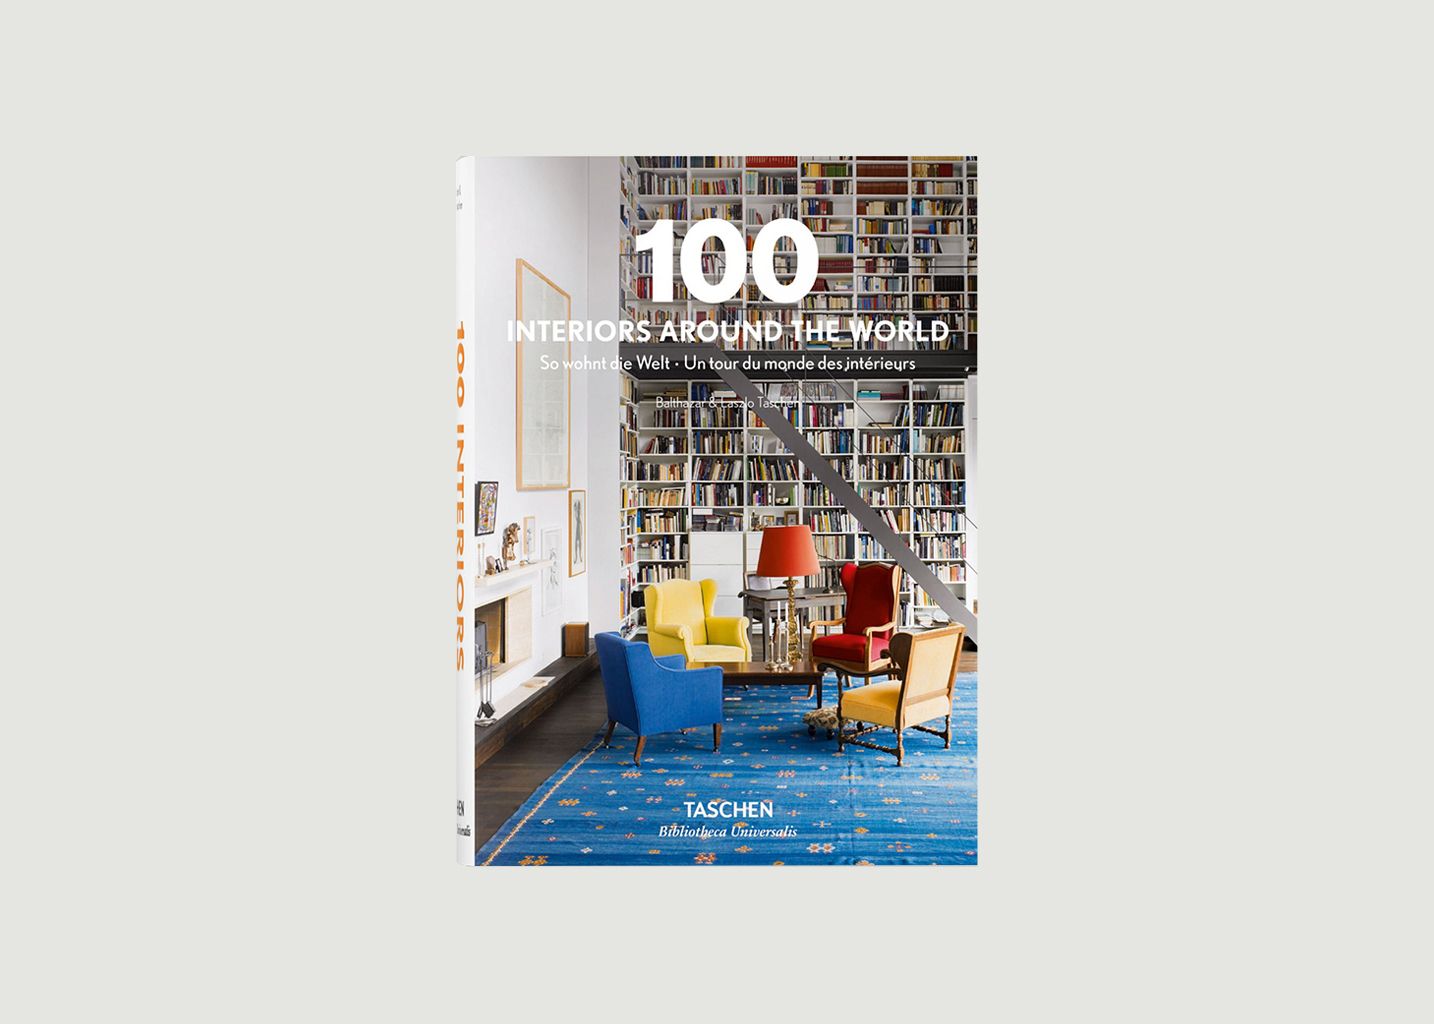 100 Interiors Around The World - Taschen